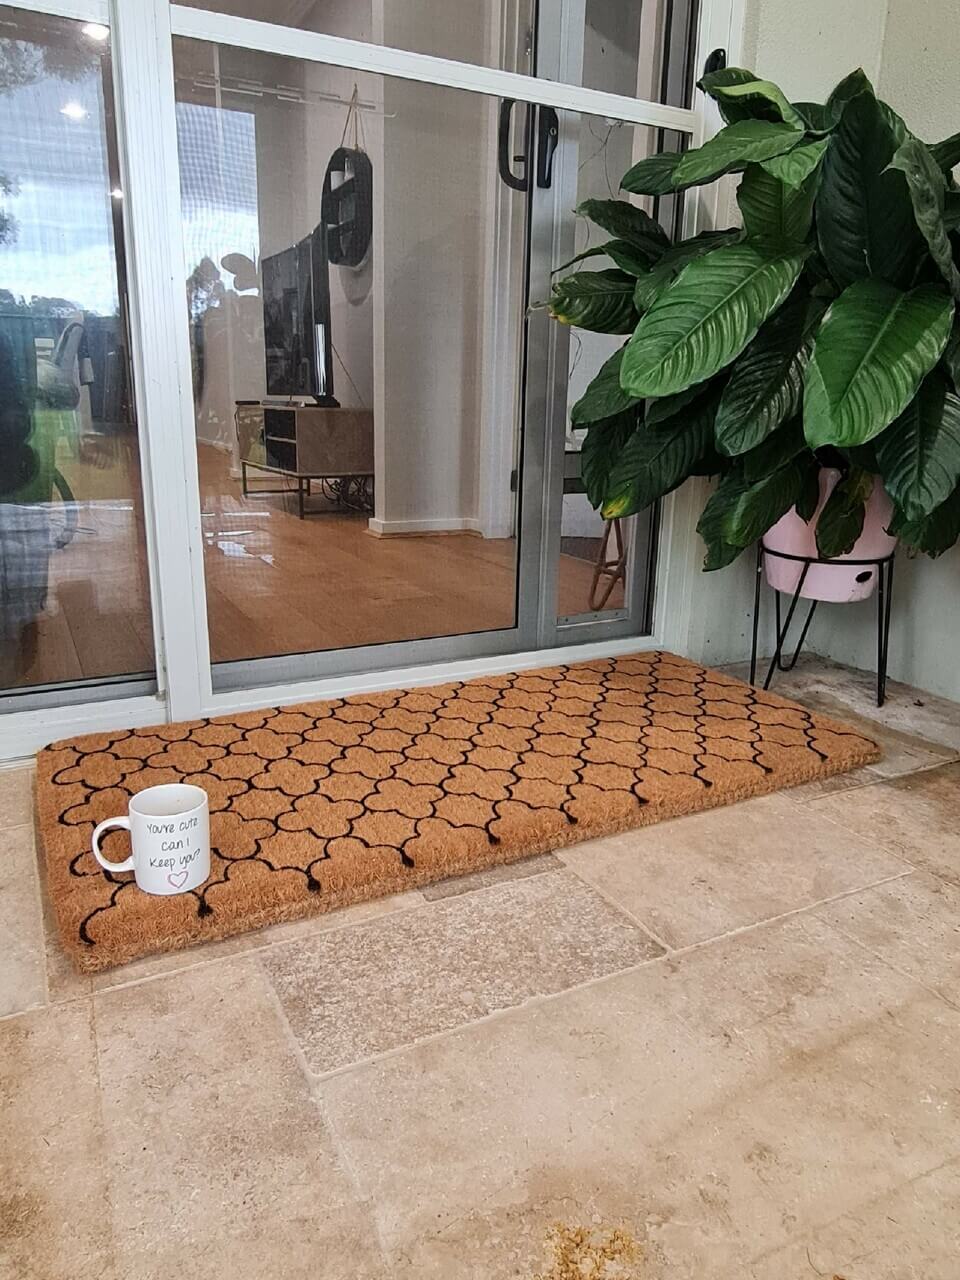 DEXI Indoor Doormat Front Door Mat, Absorbent Non-Slip Entry Rug, Mach –  Dexi